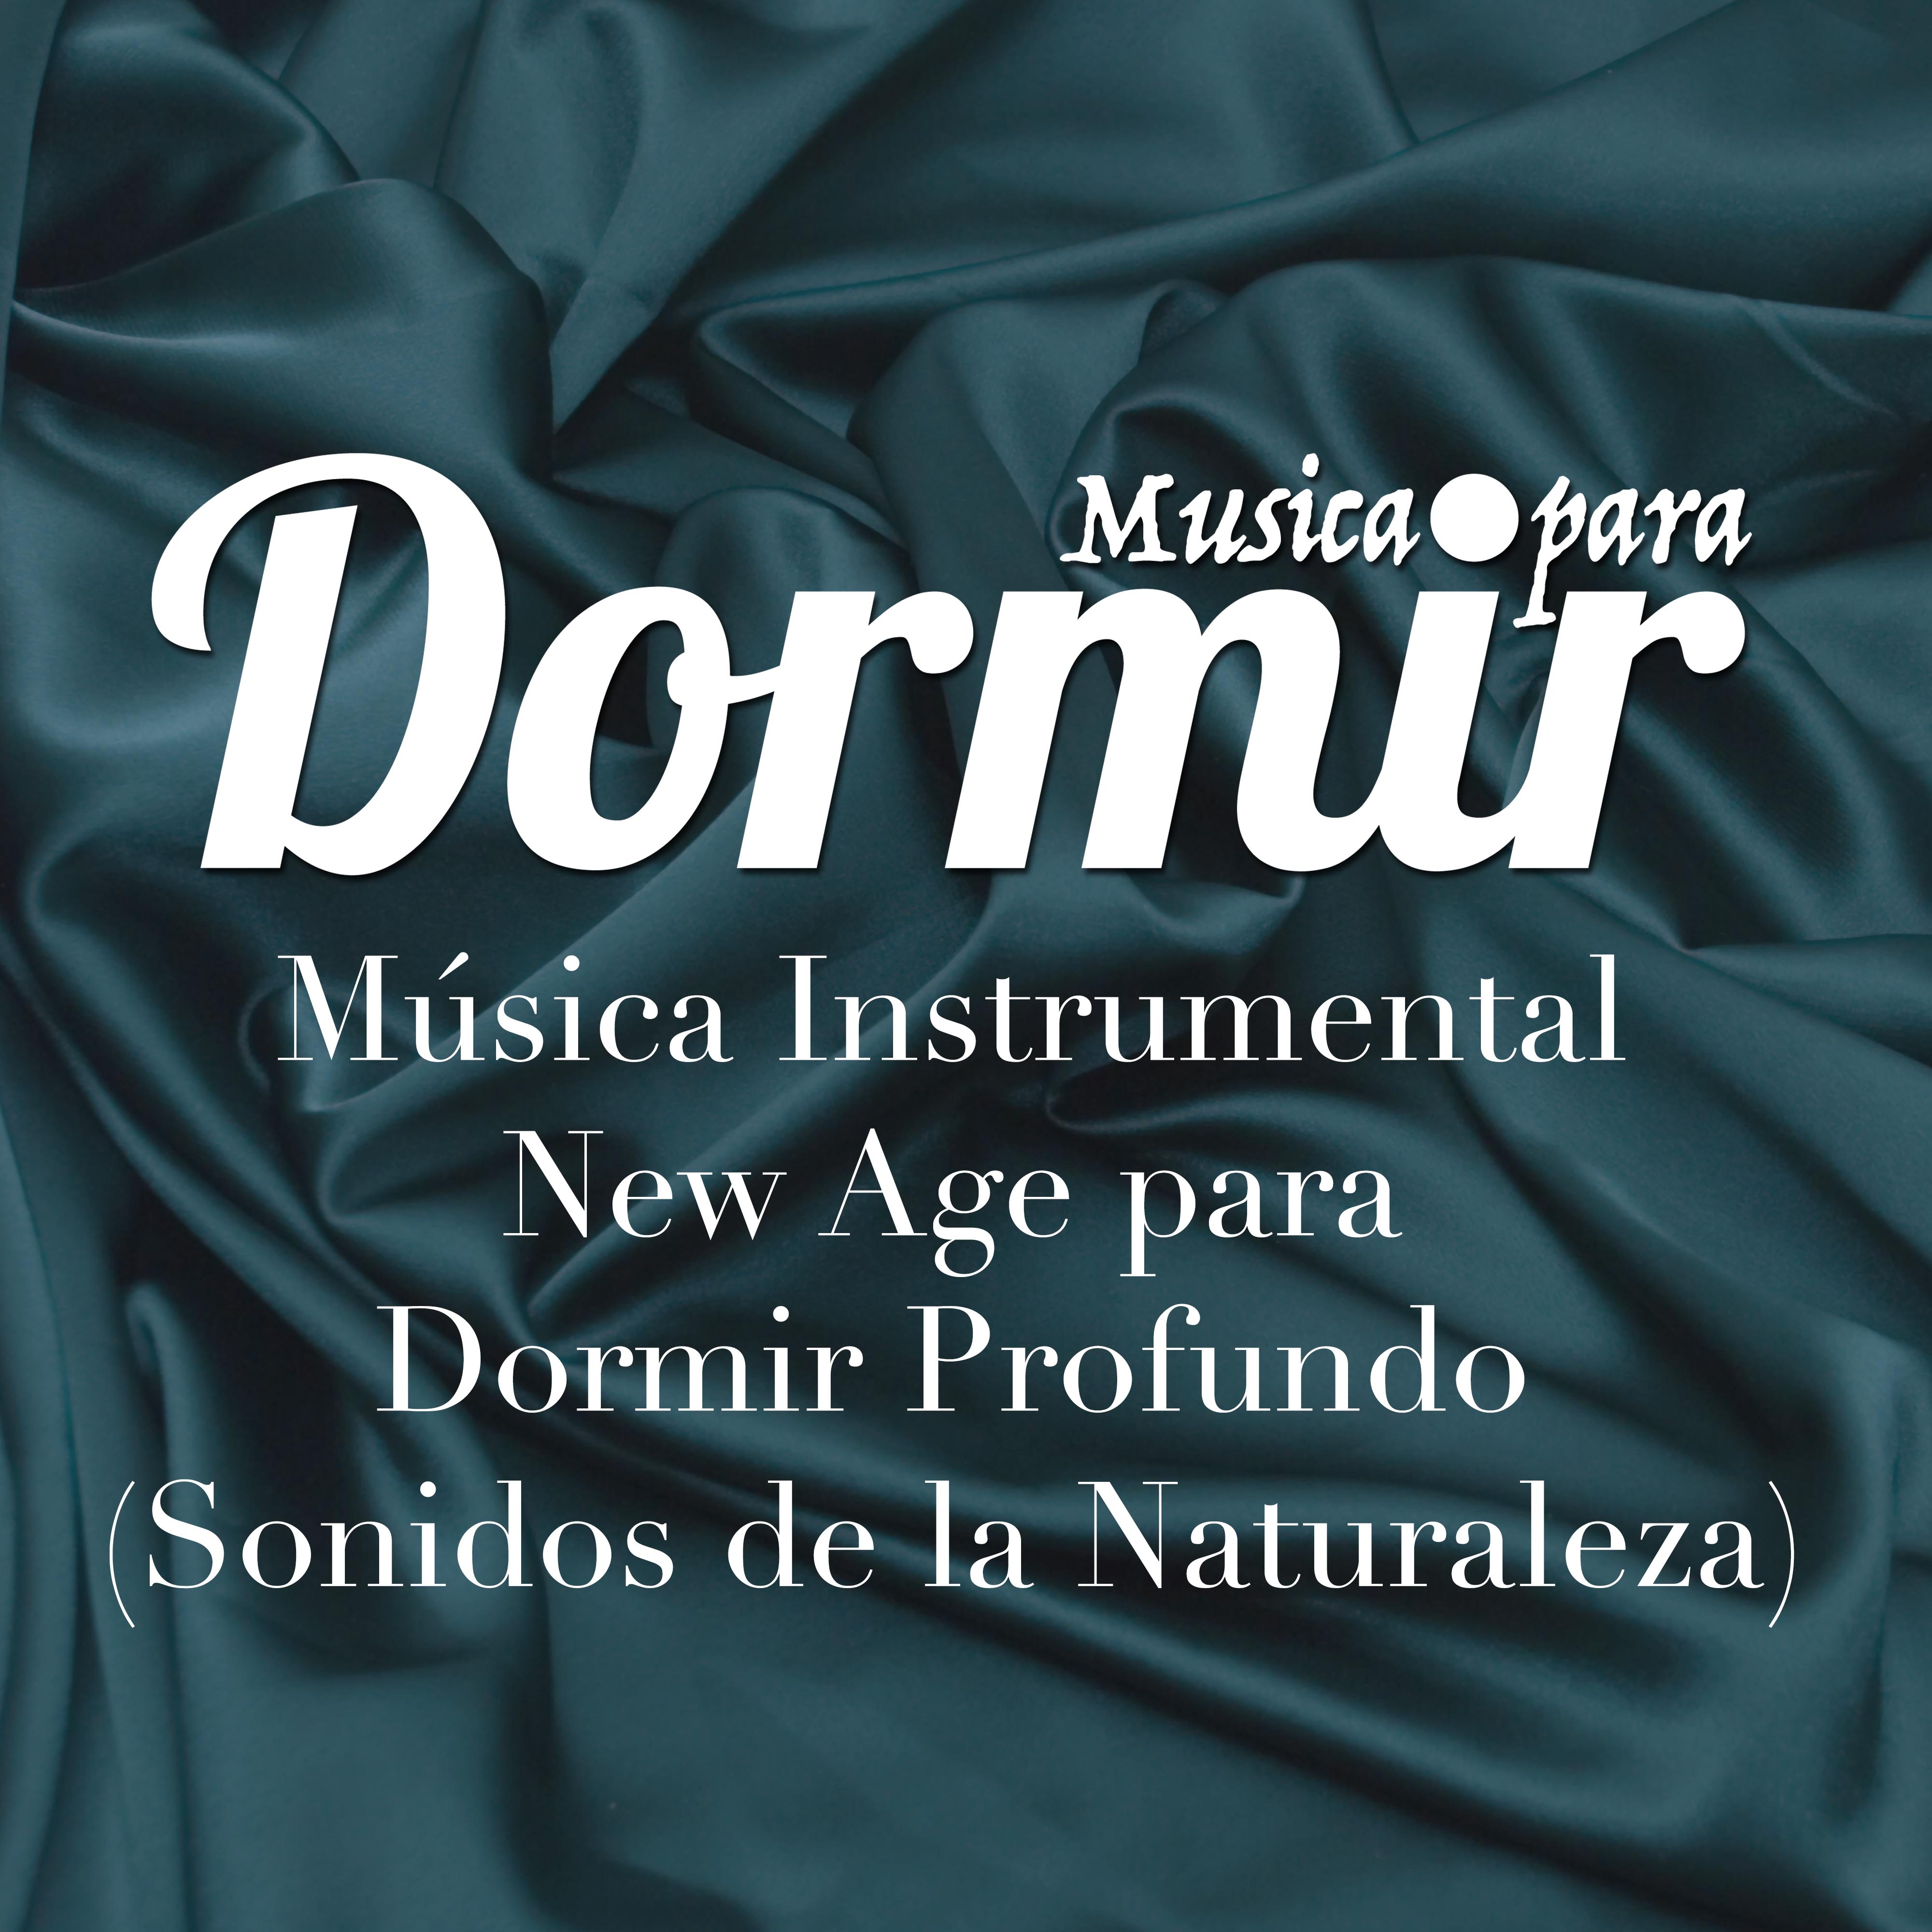 Musica para Dormir - Musica Instrumental New Age para Dormir Profundo (con los Sonidos de la Naturaleza), Musica Relajante para Dormir Profundamente